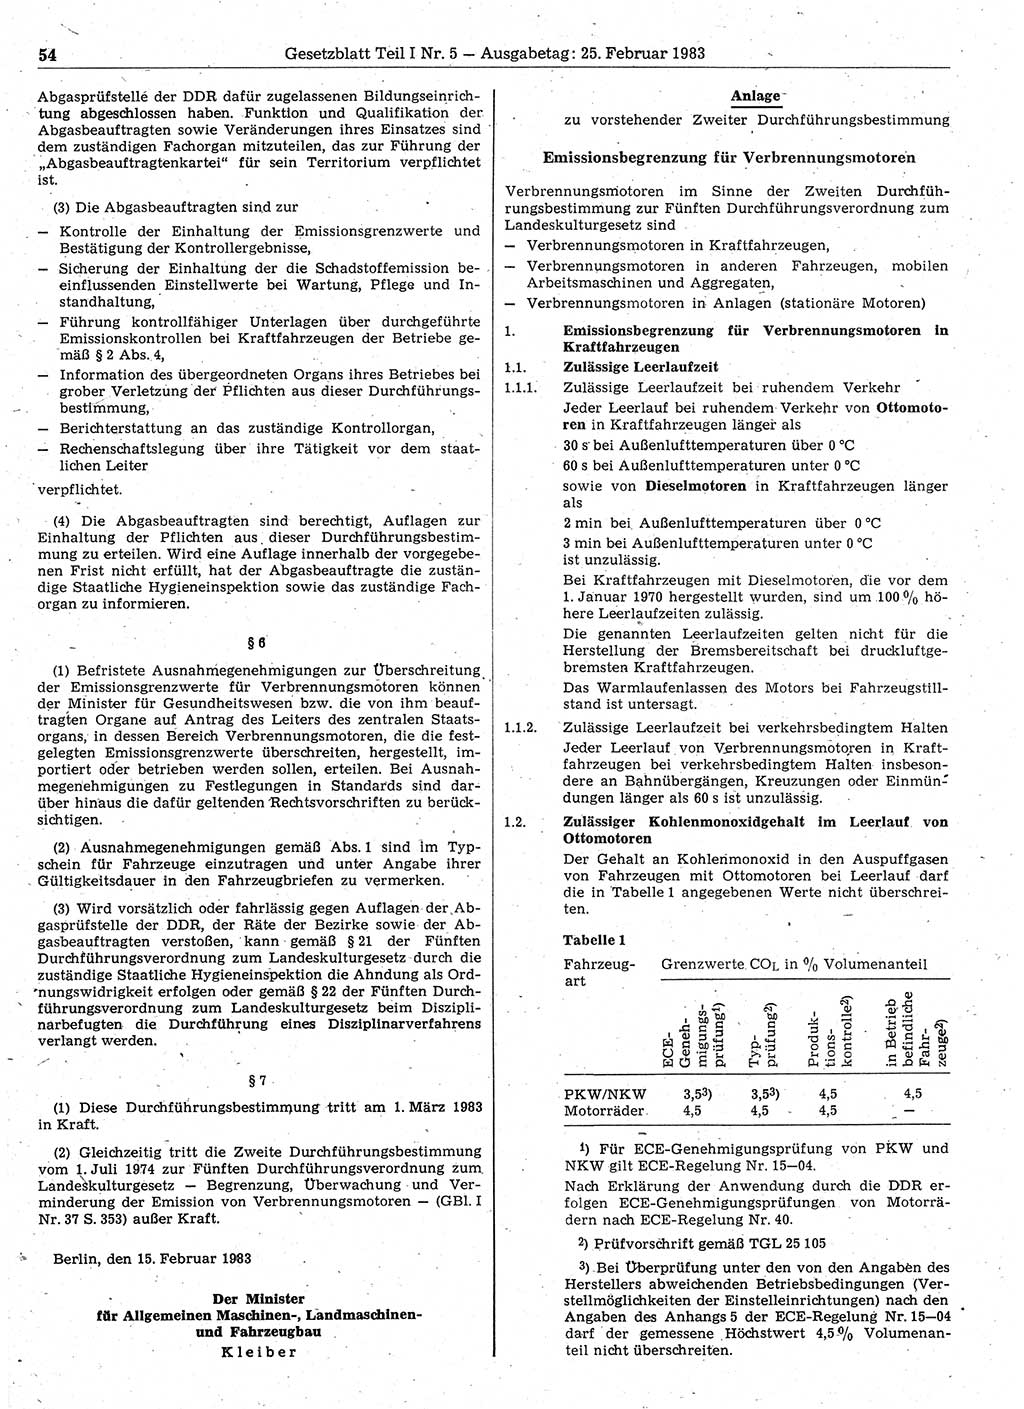 Gesetzblatt (GBl.) der Deutschen Demokratischen Republik (DDR) Teil Ⅰ 1983, Seite 54 (GBl. DDR Ⅰ 1983, S. 54)